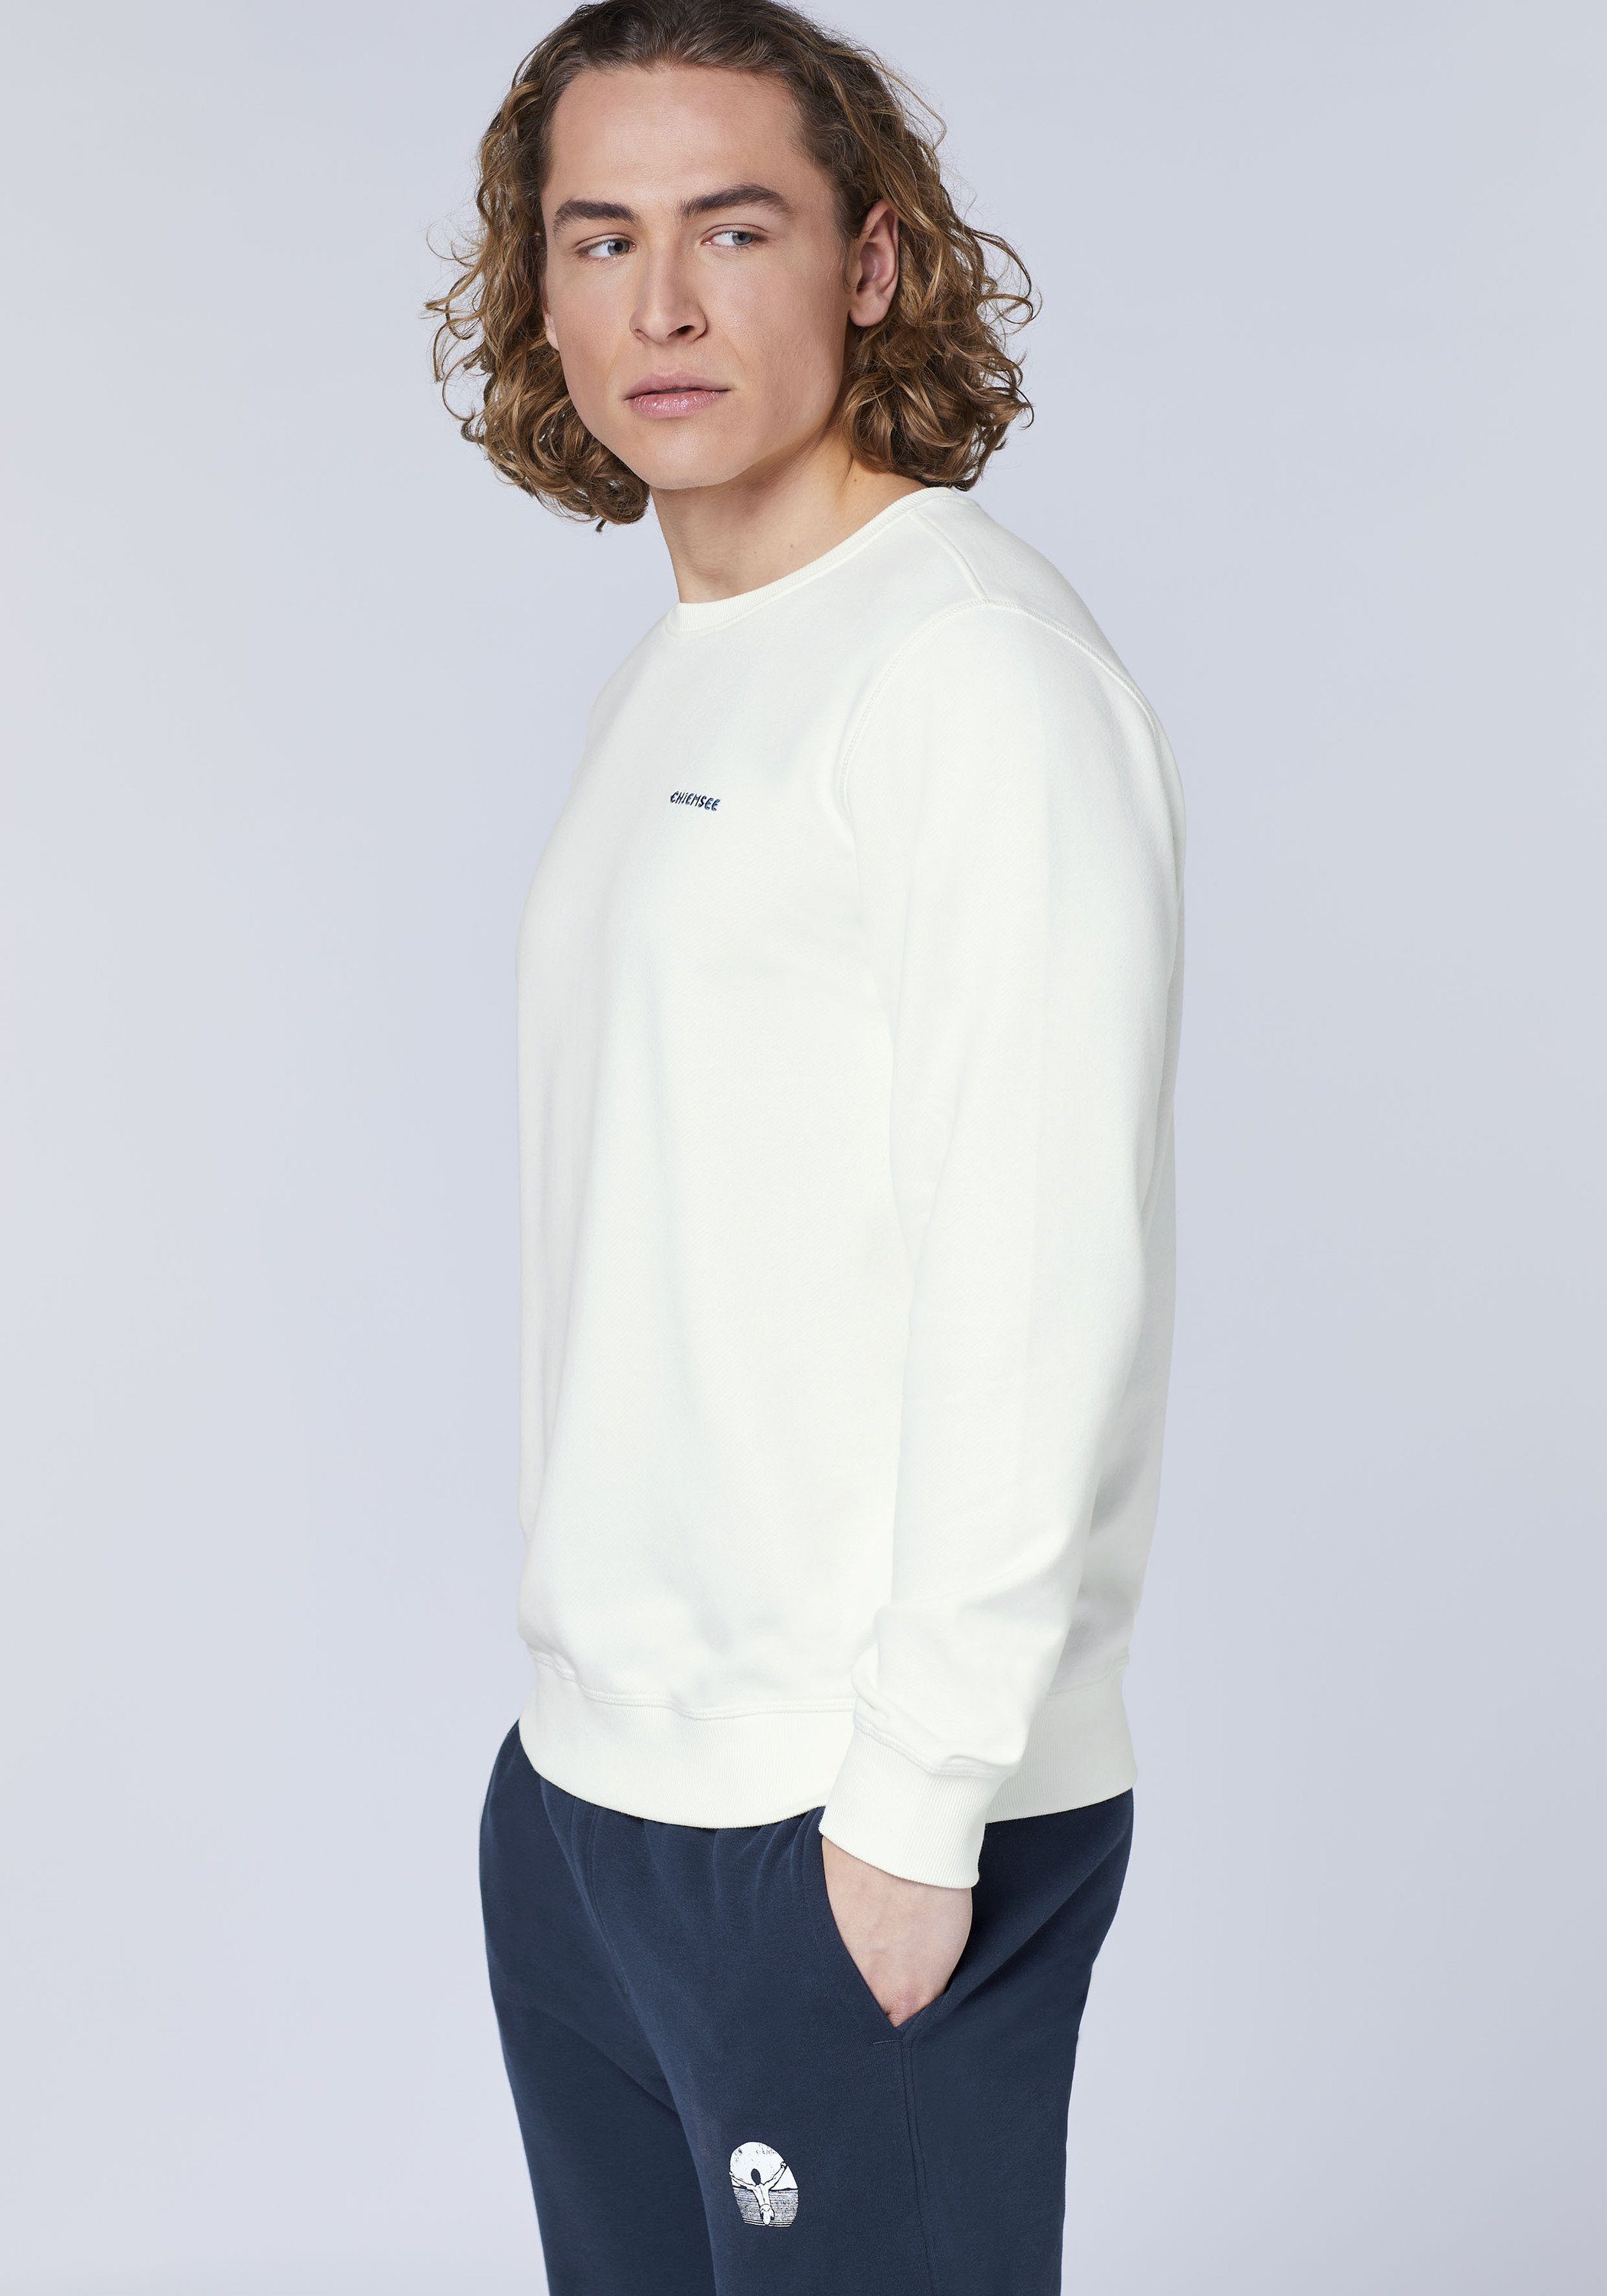 Chiemsee Sweatshirt Sweater mit Star 1 11-4202 Jumper-Motiv White